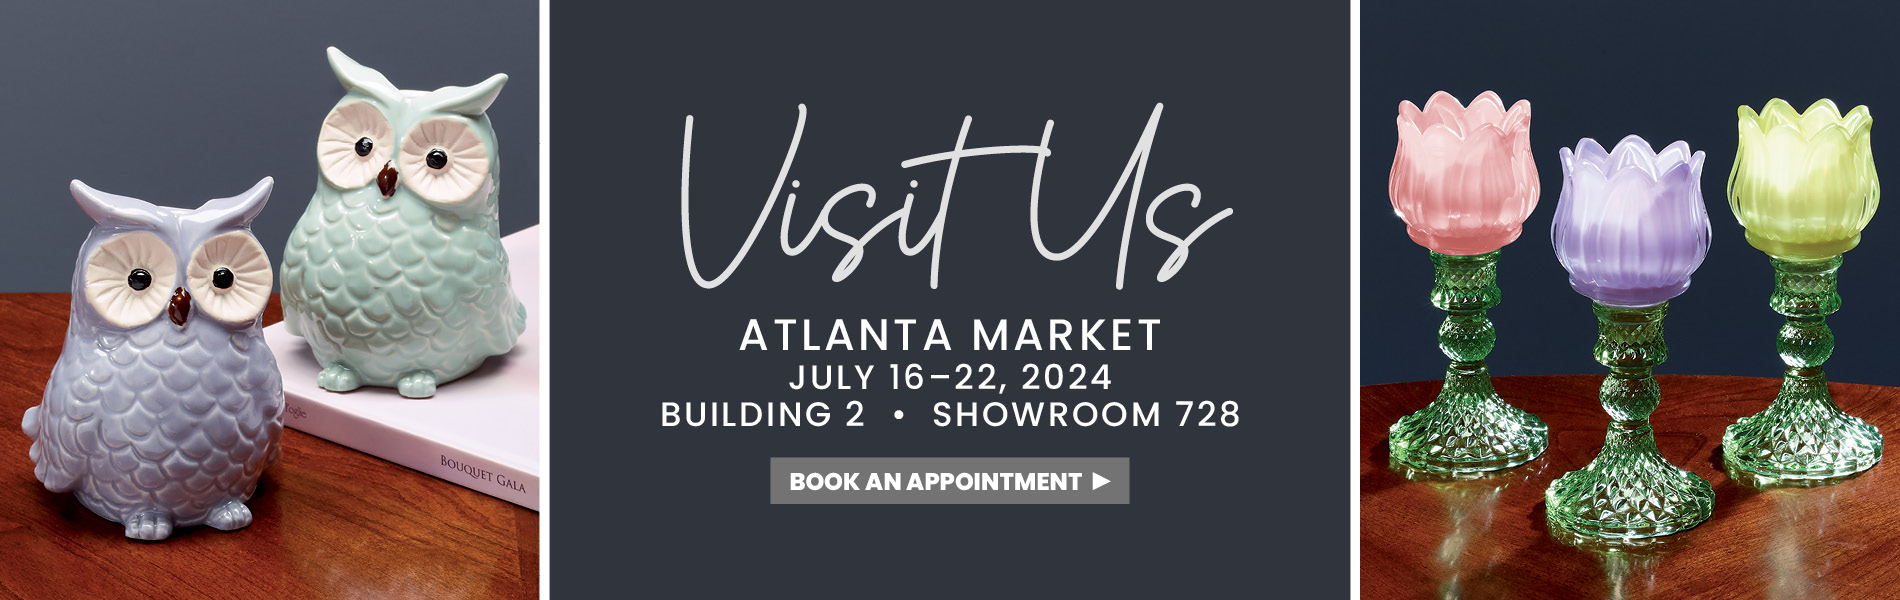 Visit Us at Atlanta Market